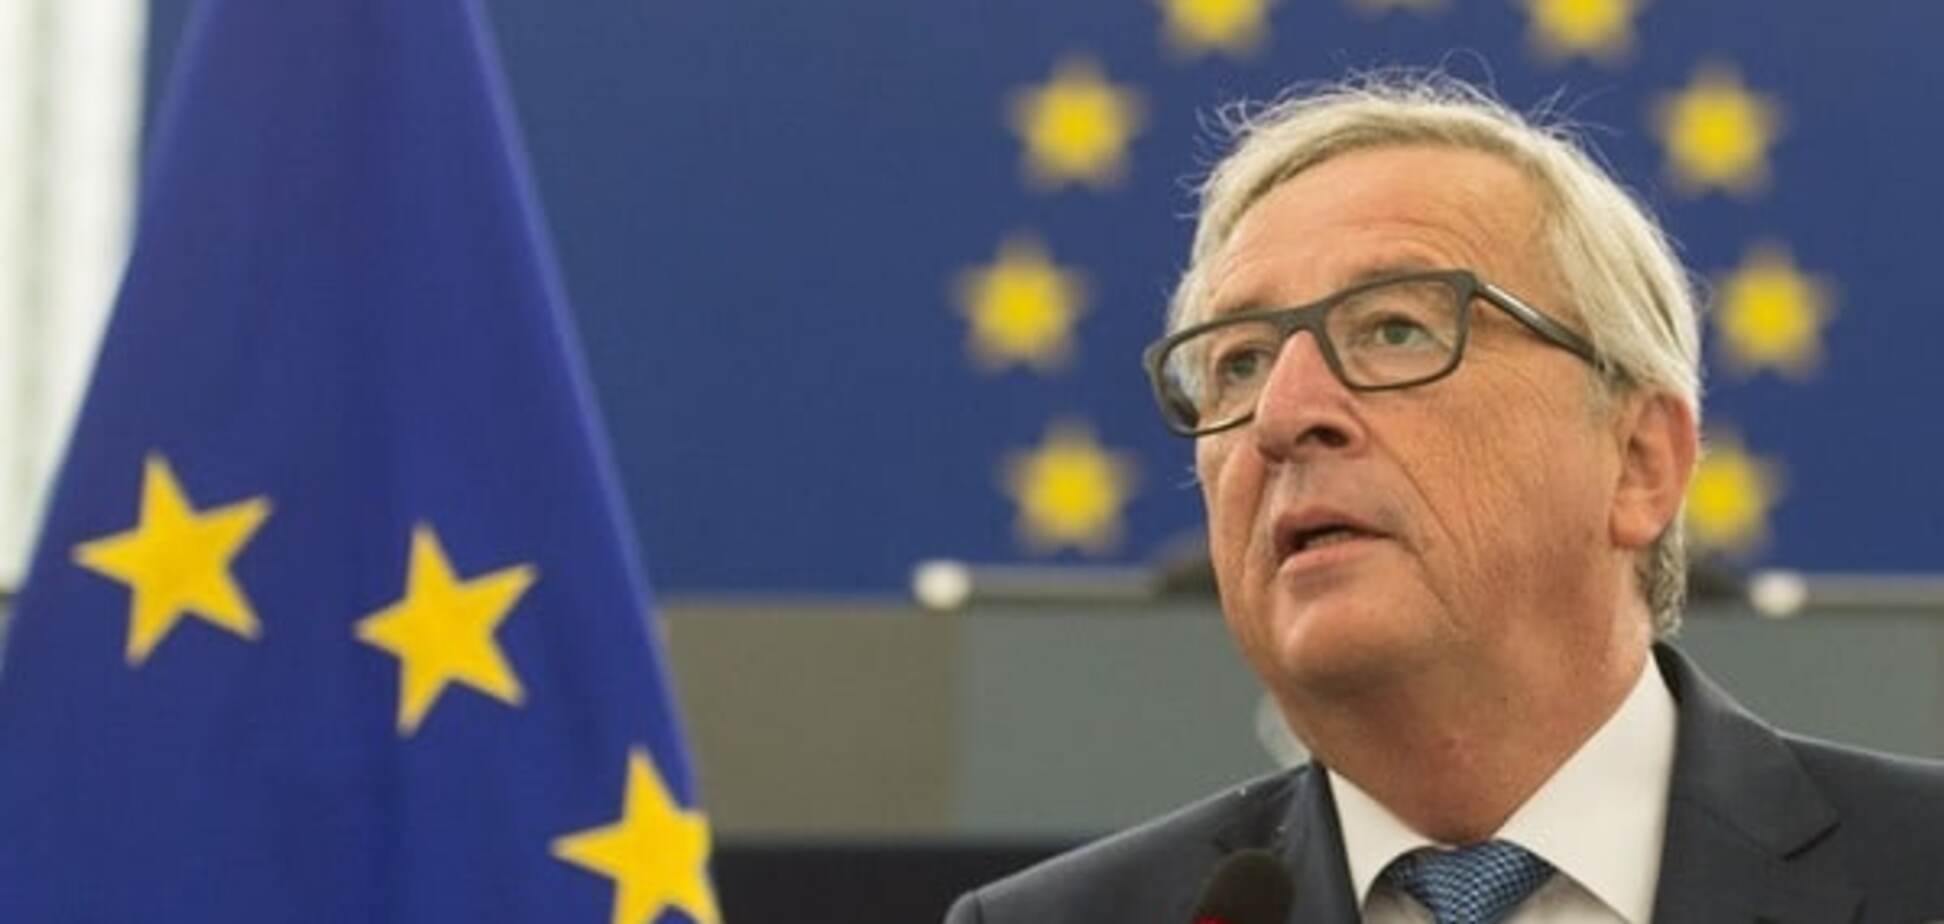 ЄС повинен силою захищати європейські цінності - Юнкер 